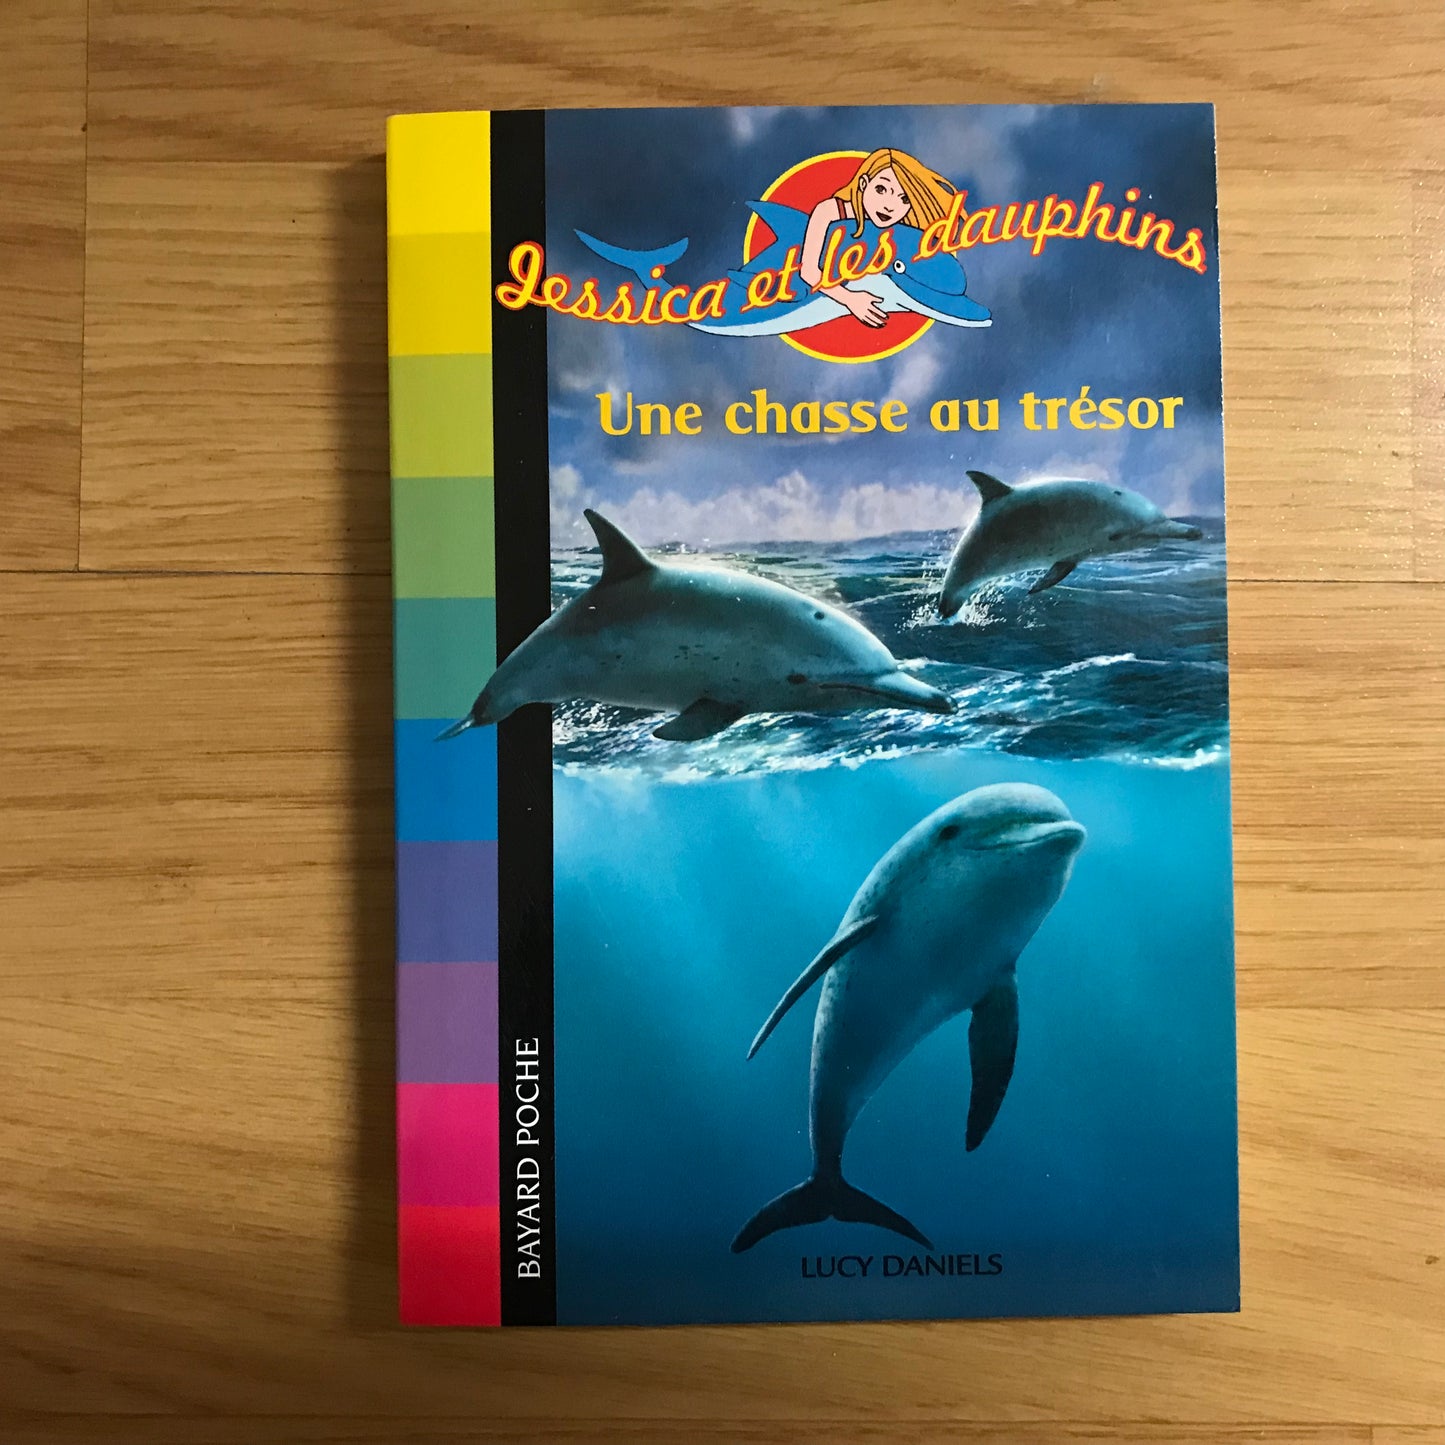 Jessica et les dauphins: Une chasse au trésor - Lucy Daniels